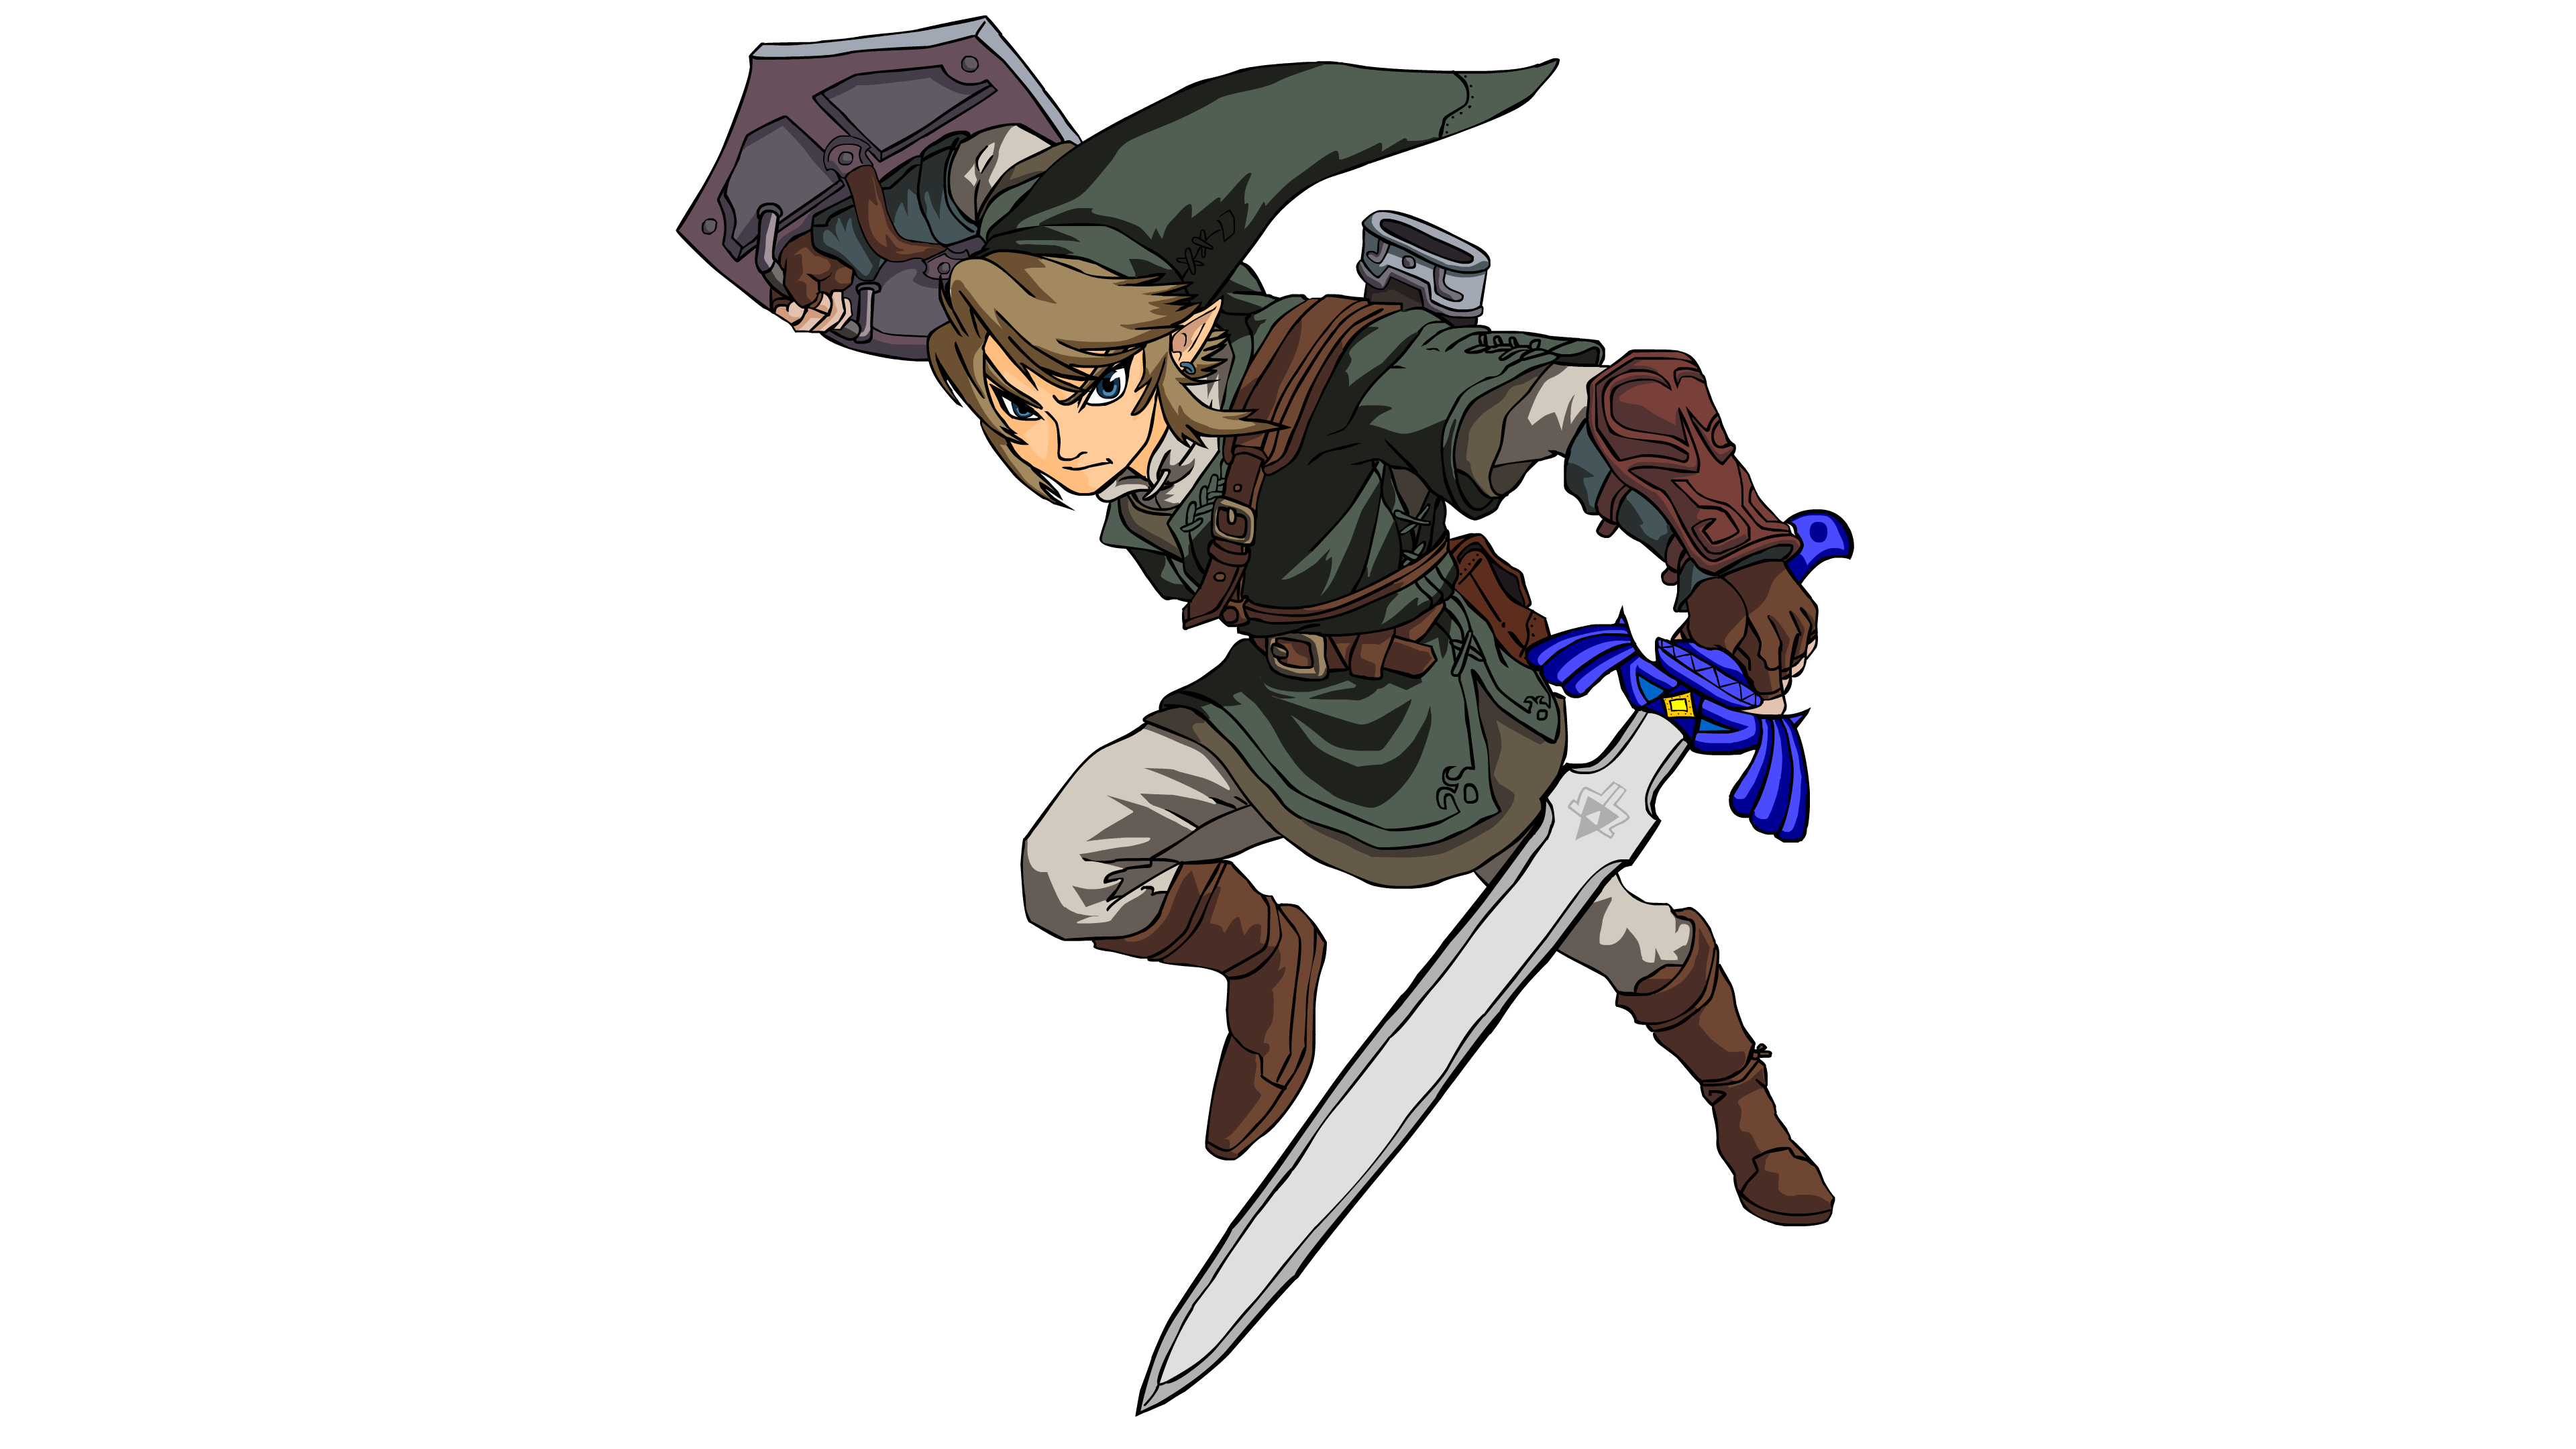 Bạn là fan của trò chơi Zelda Link? Hãy xem hình ảnh liên quan đến nhân vật của trò chơi này! Với các hình ảnh đầy màu sắc và đường nét tinh xảo, bạn sẽ được trải nghiệm cảm giác hưng phấn khi chơi game như thực tế.